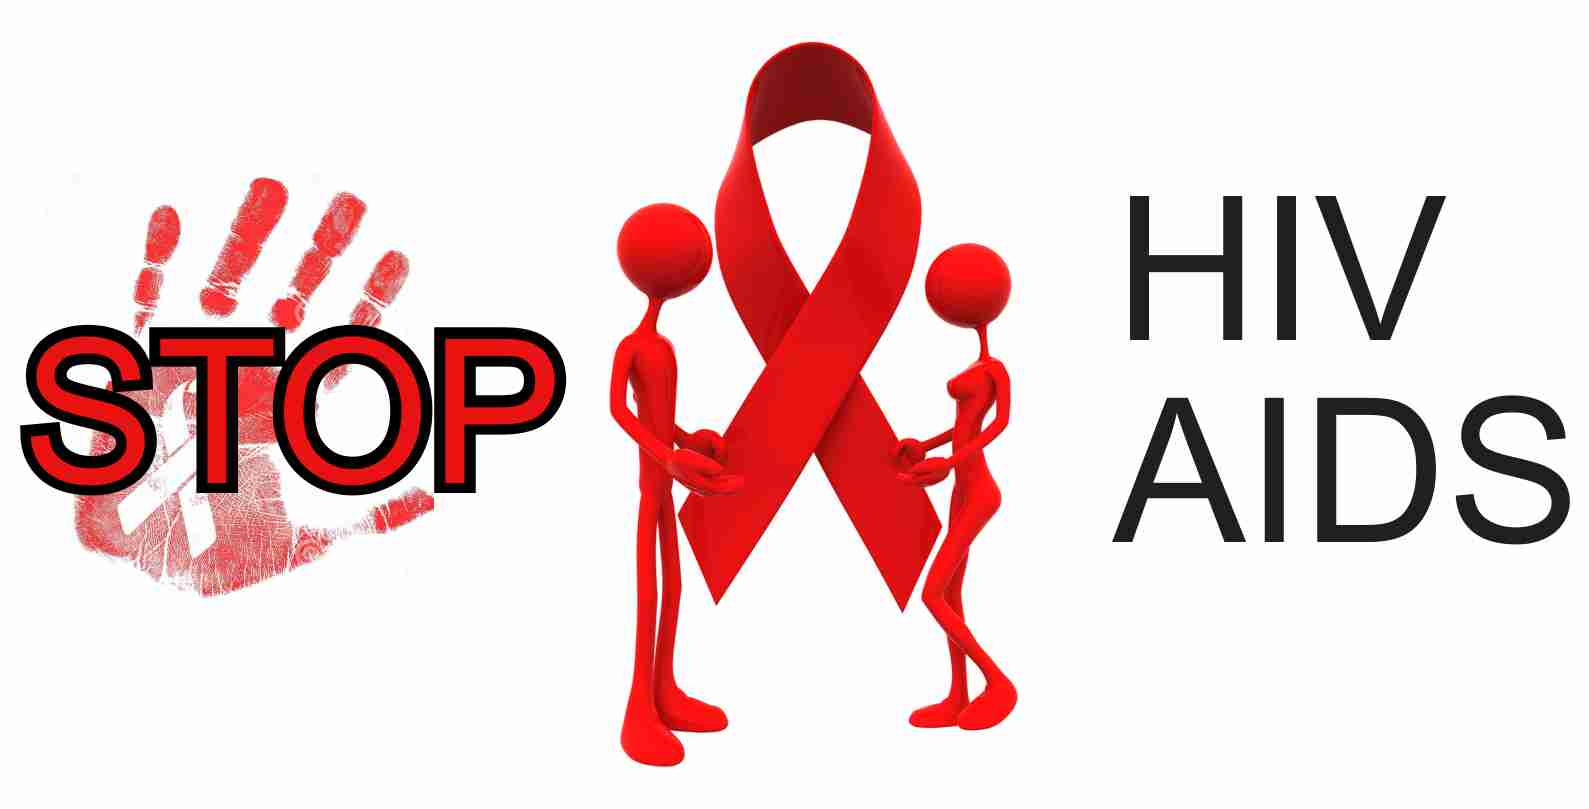 Bahaya HIV  Aids  Aku Sehat